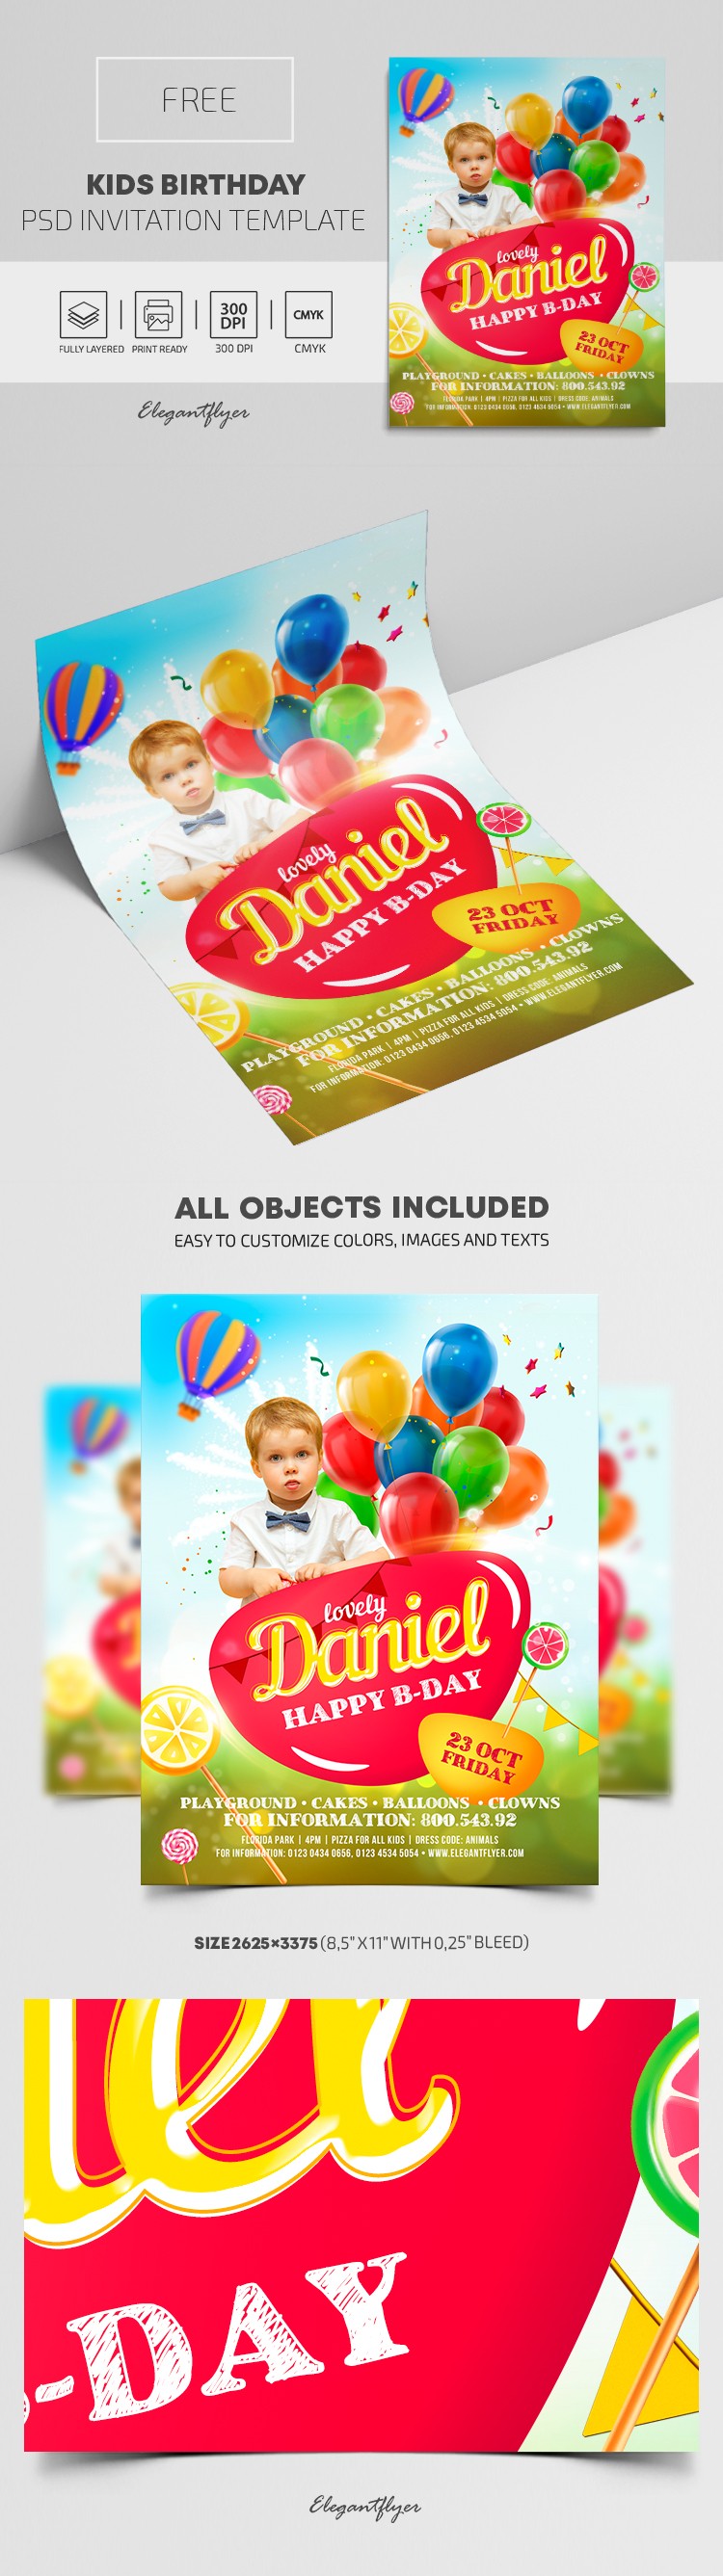 Invitación de cumpleaños para niños by ElegantFlyer